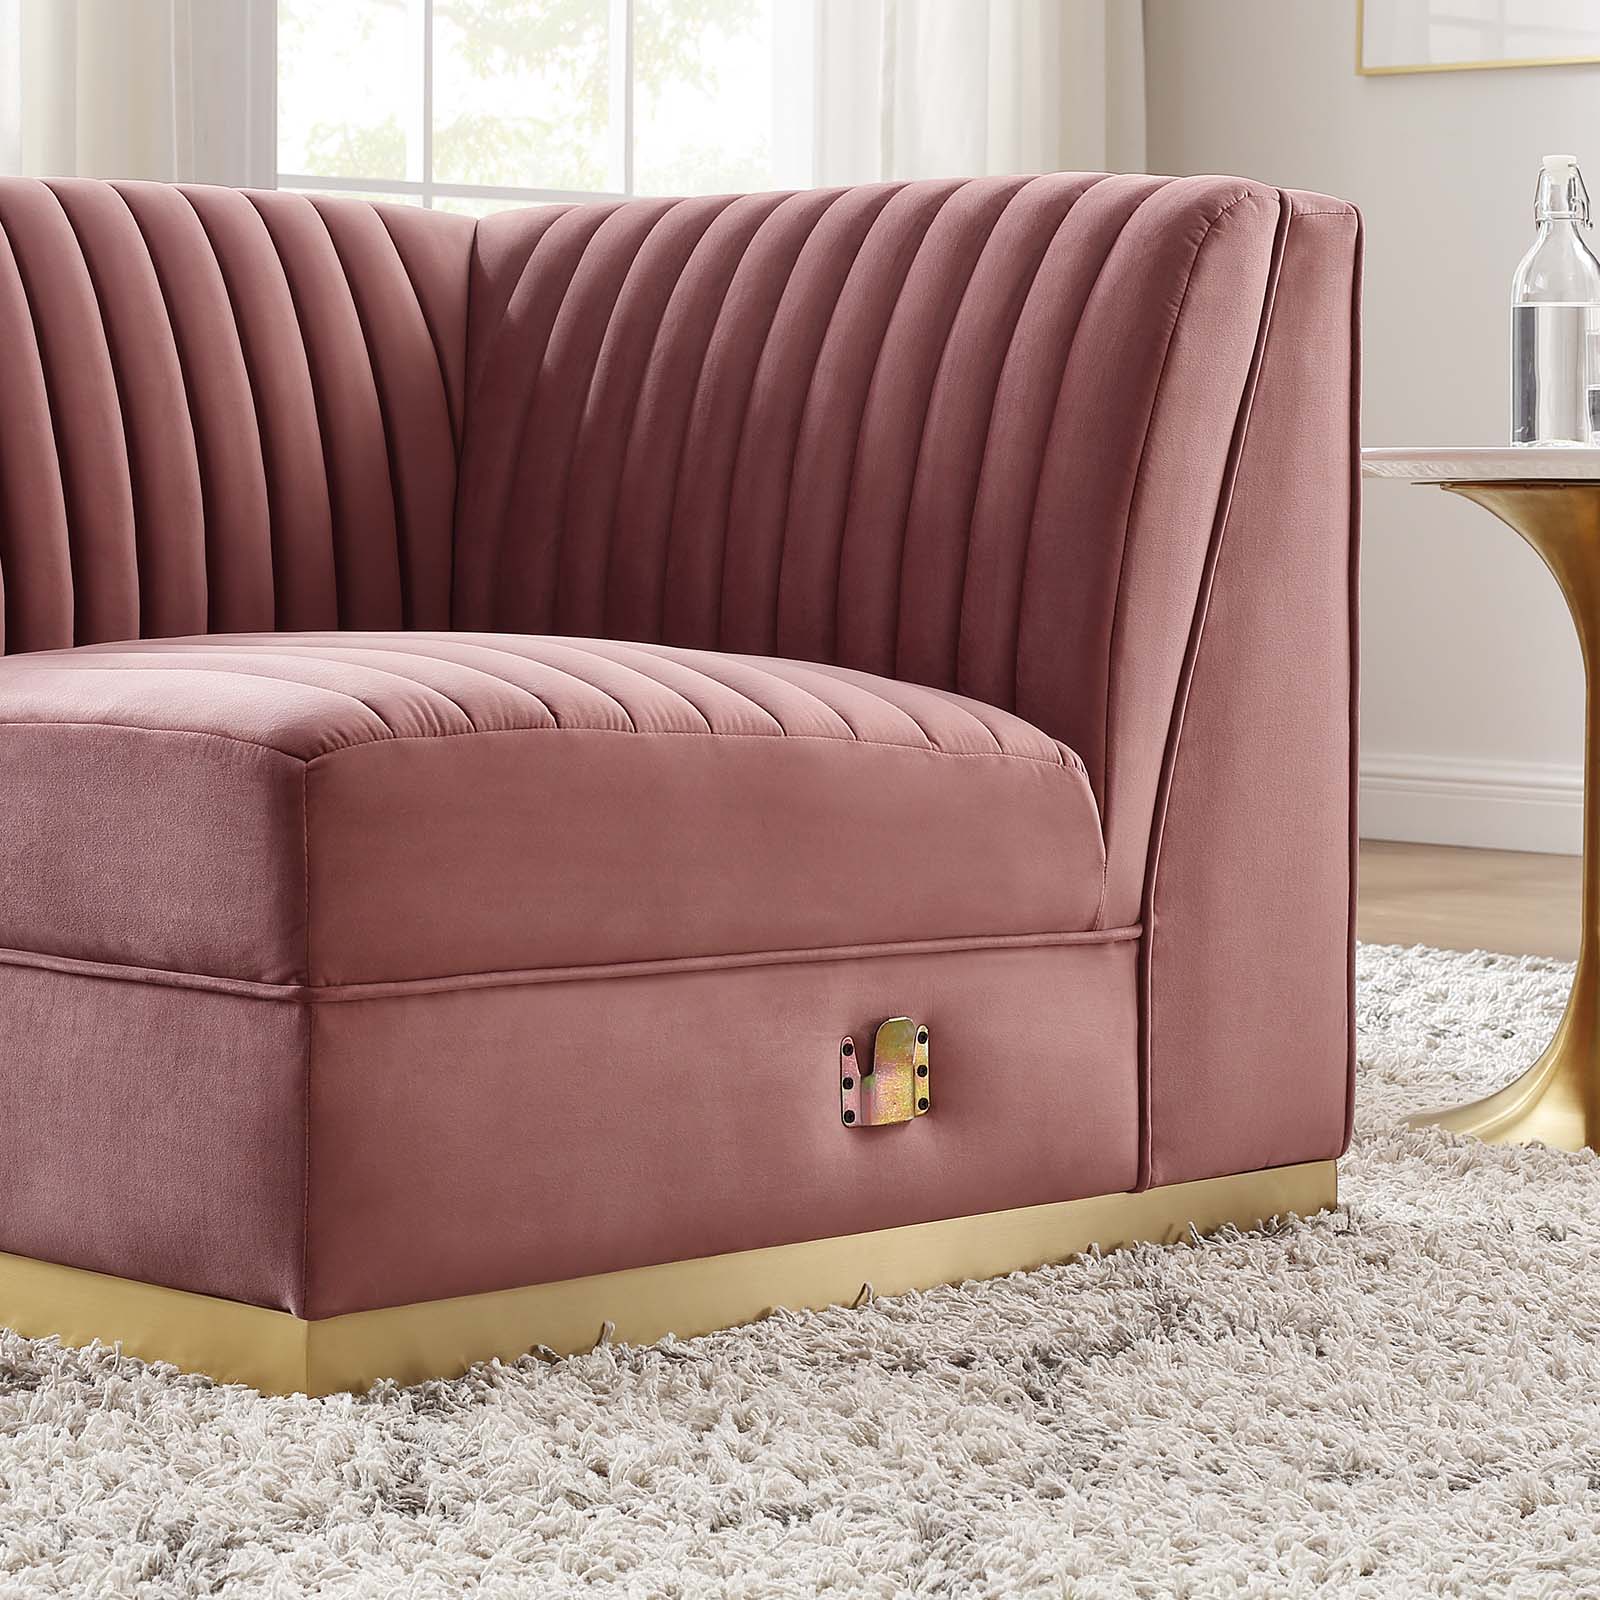 Sanguine Channel Tufted Performance Velvet Modular Sectional Sofa Right Corner Chair - East Shore Modern Home Furnishings